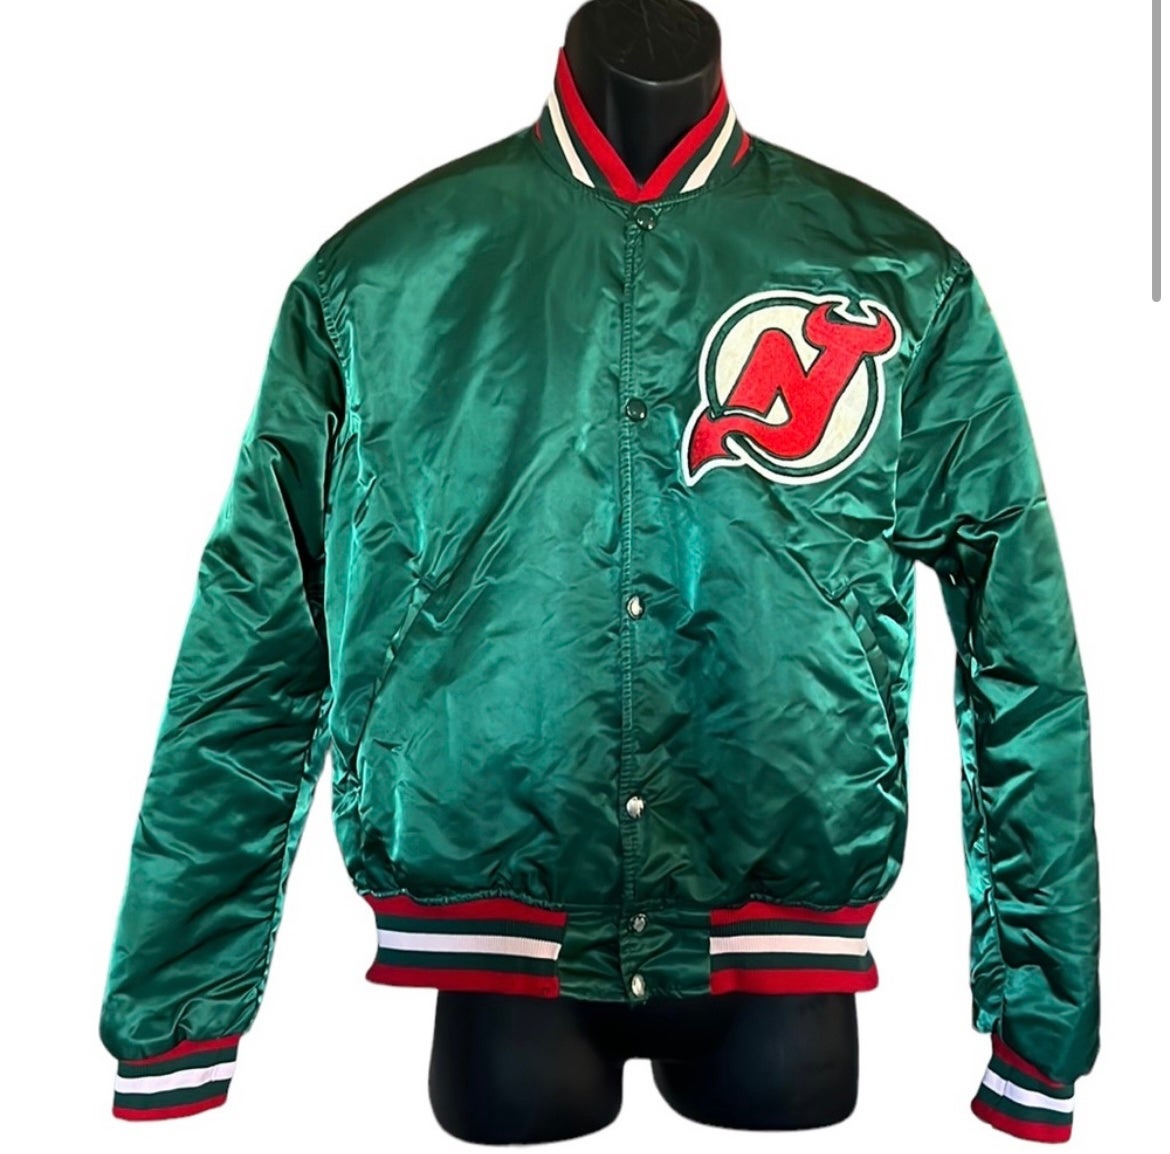 Vintage Starter New Jersey Devils Winter Jacket #vintage